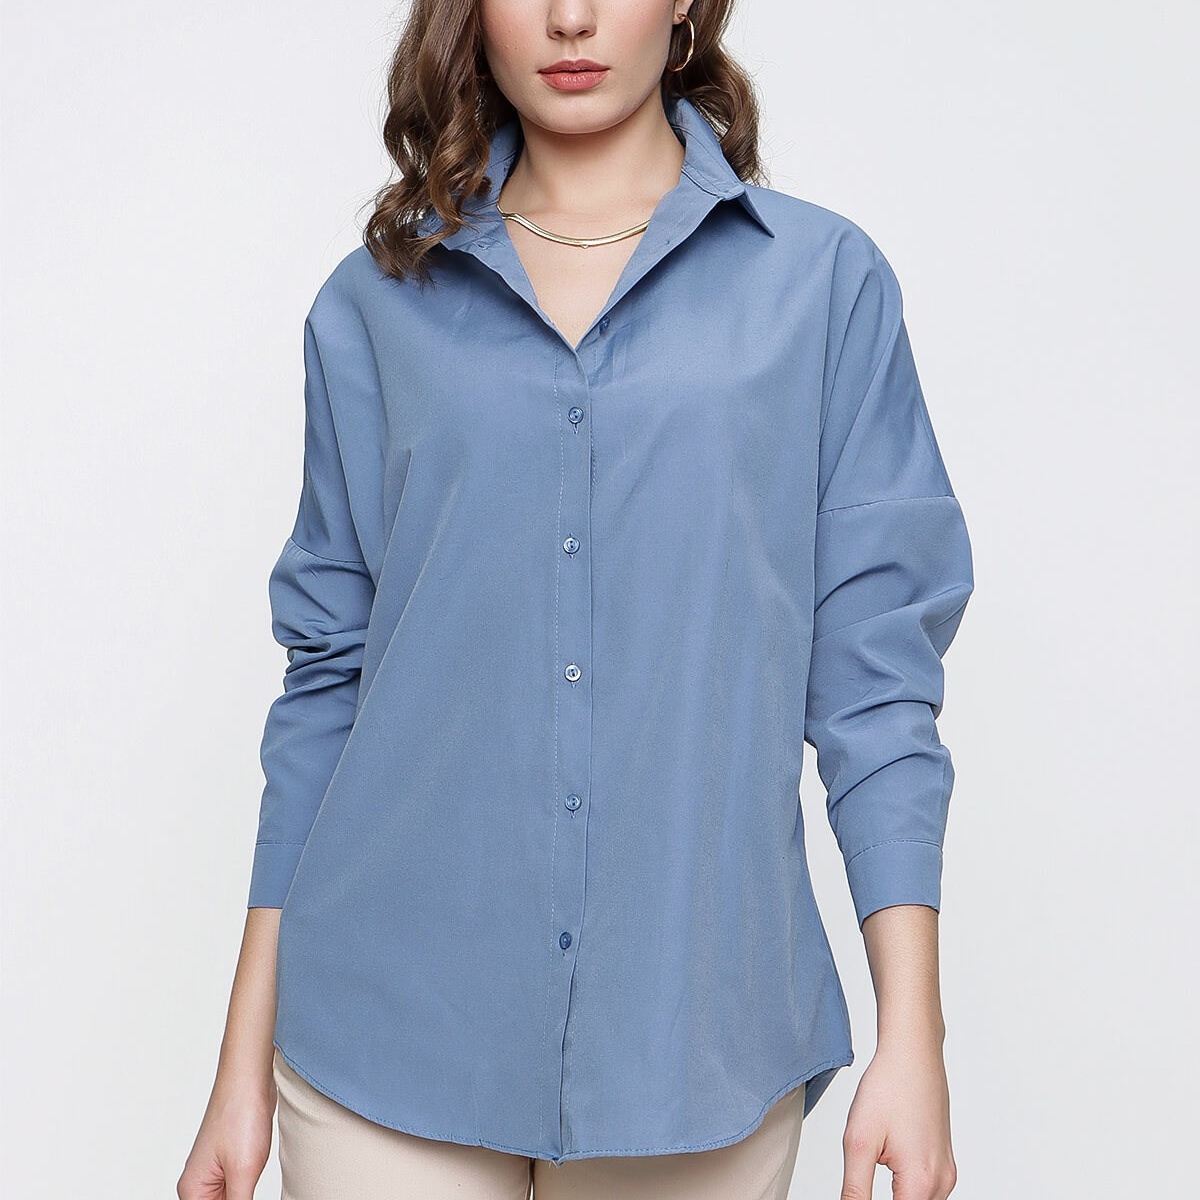 Flo Kadın Mavi Geniş Yaka Düz Gömlek. 4